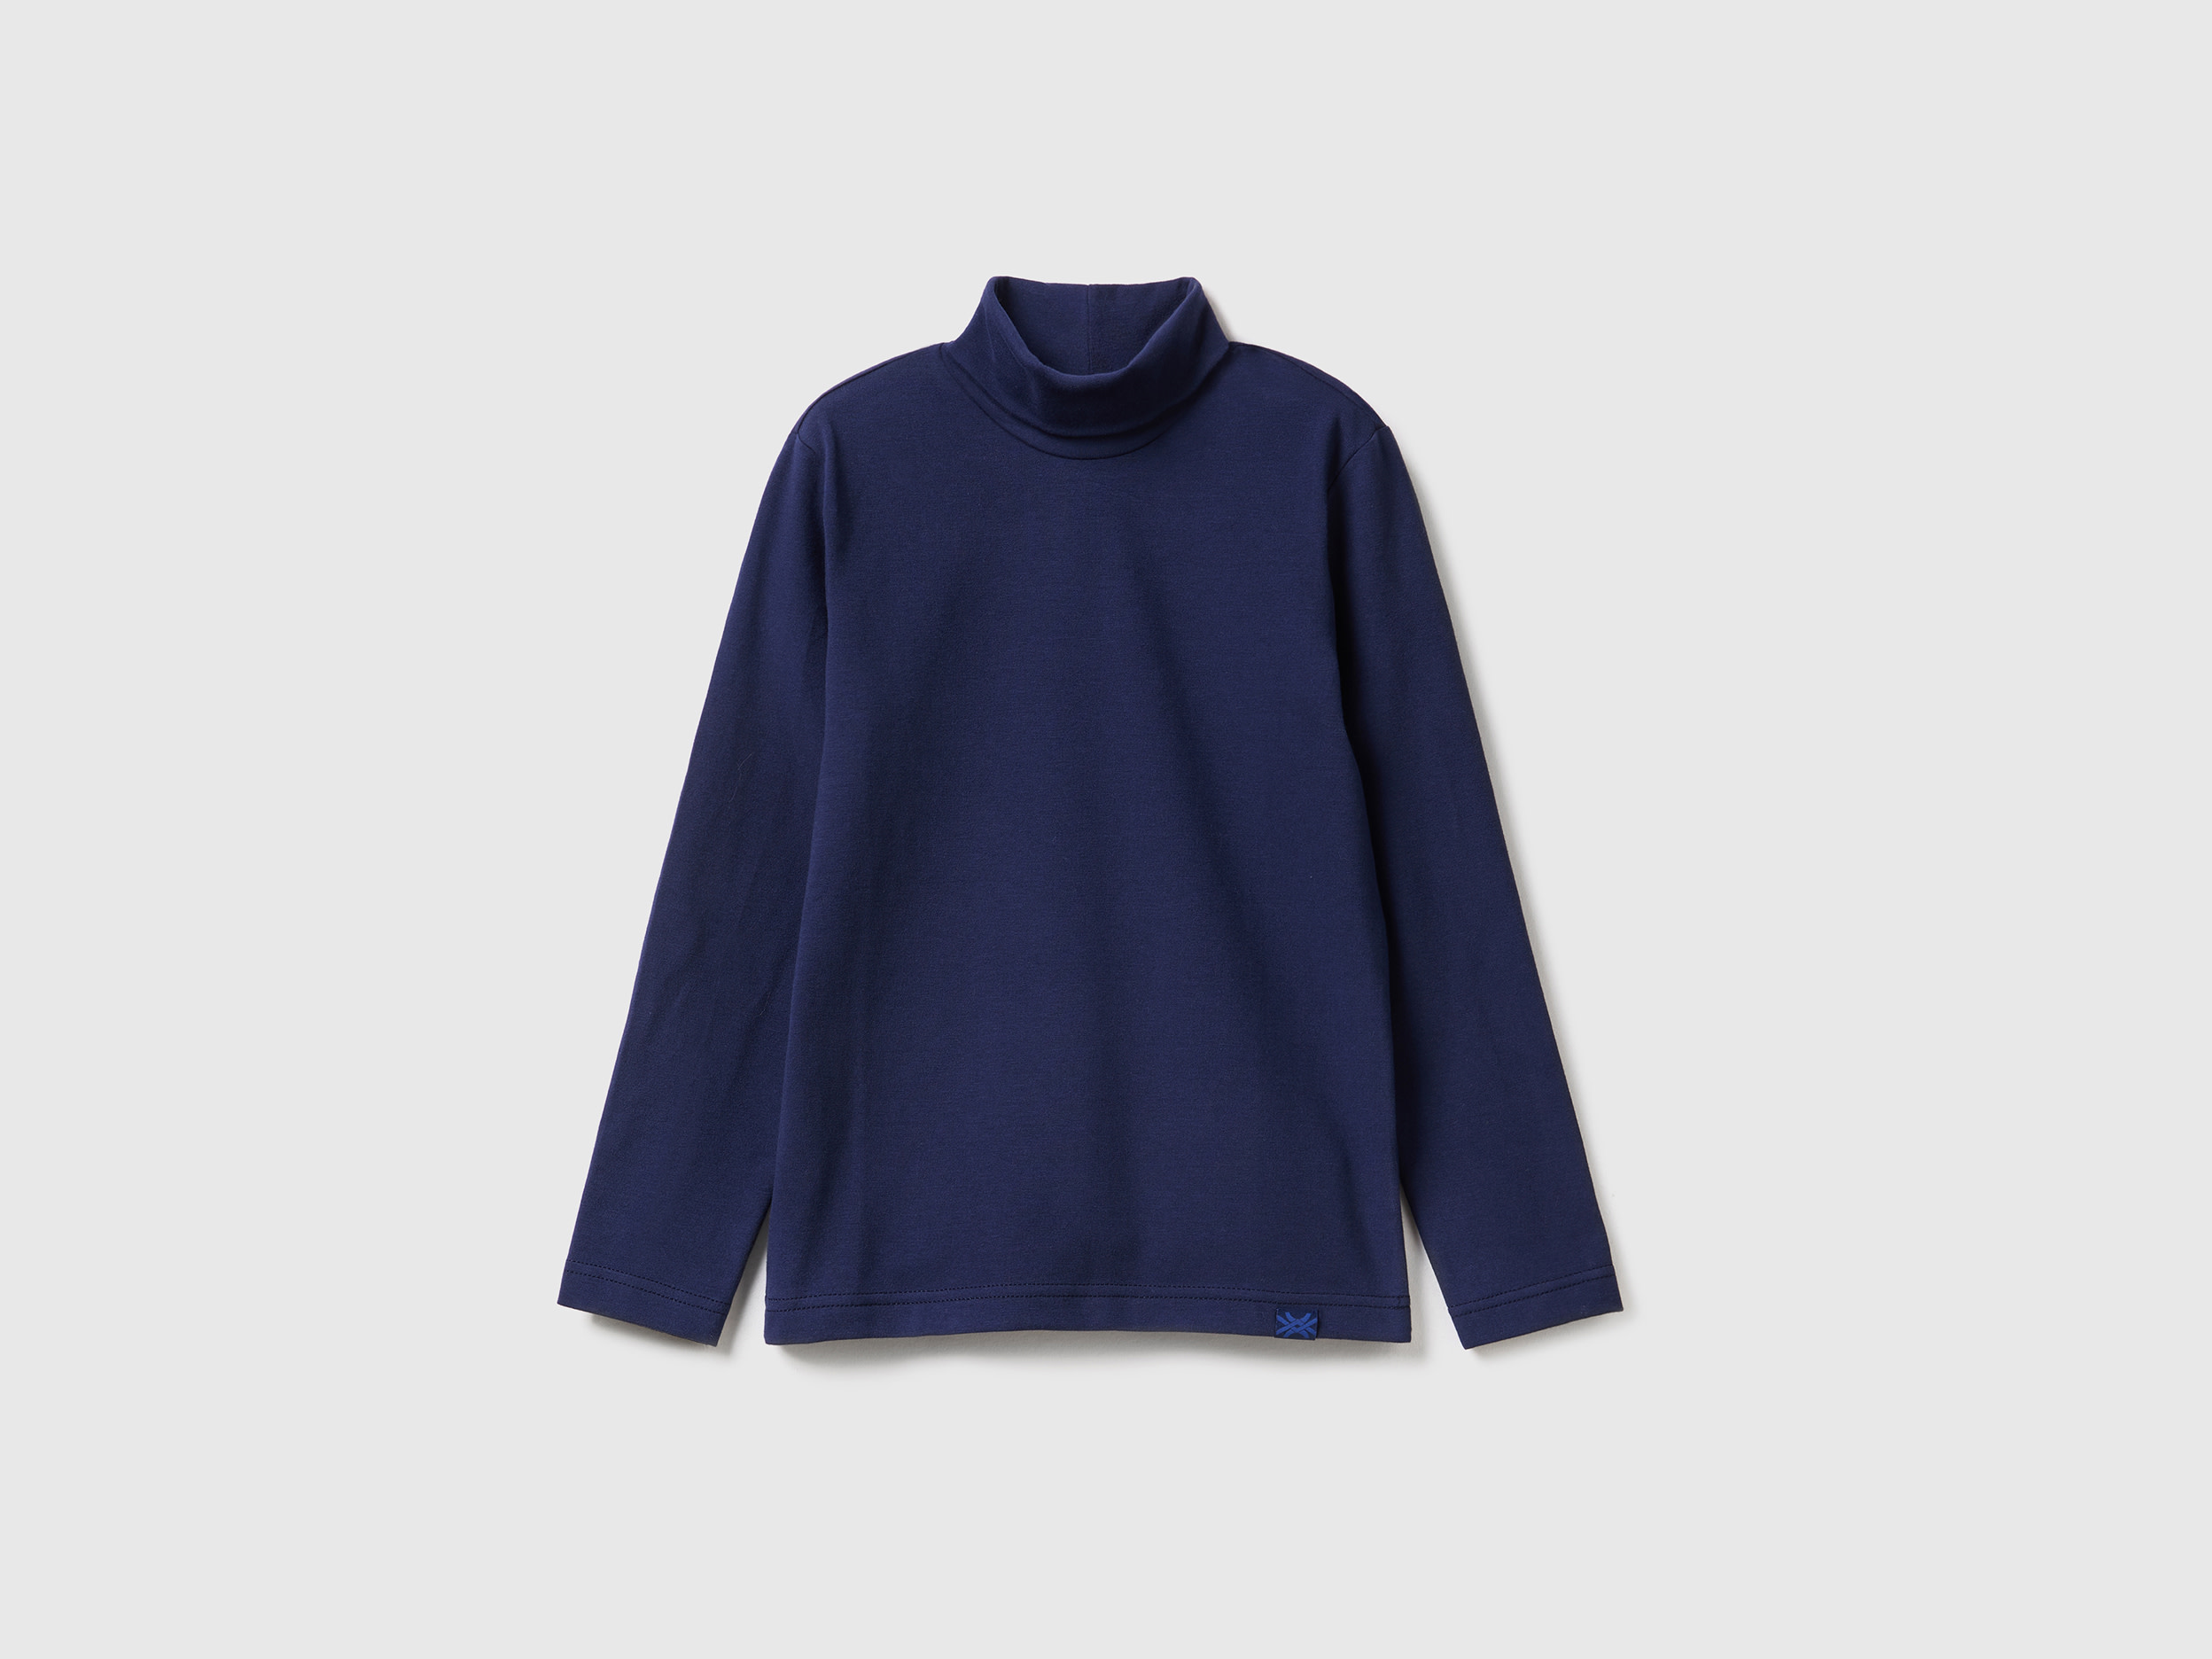 Benetton, Long Sleeve Turtleneck T-shirt, size 3XL, Dark Blue, Kids